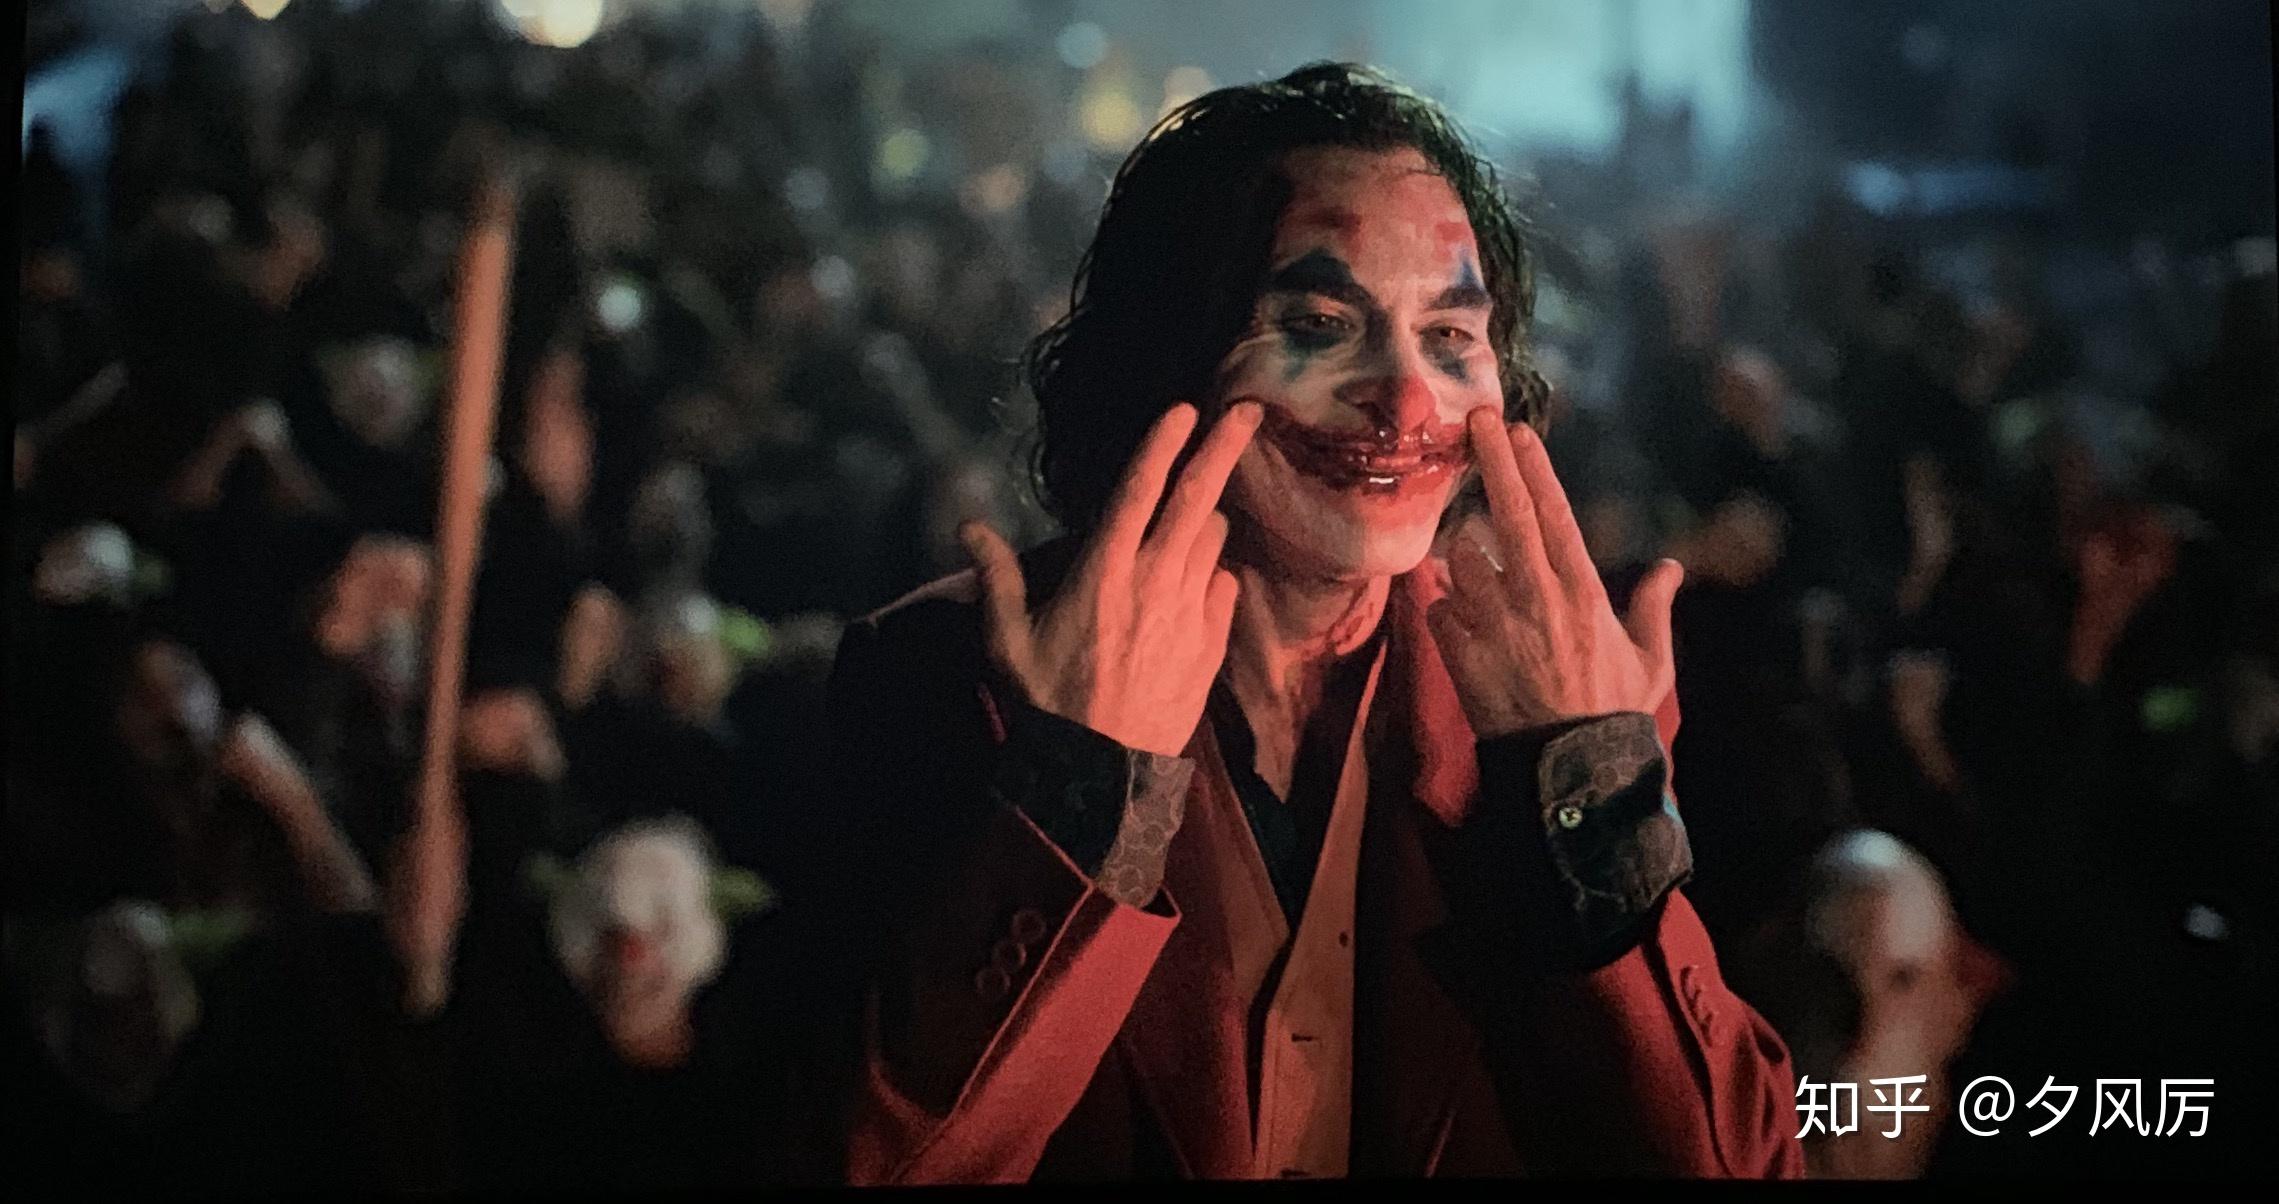 如何评价电影《小丑》(2019)? 